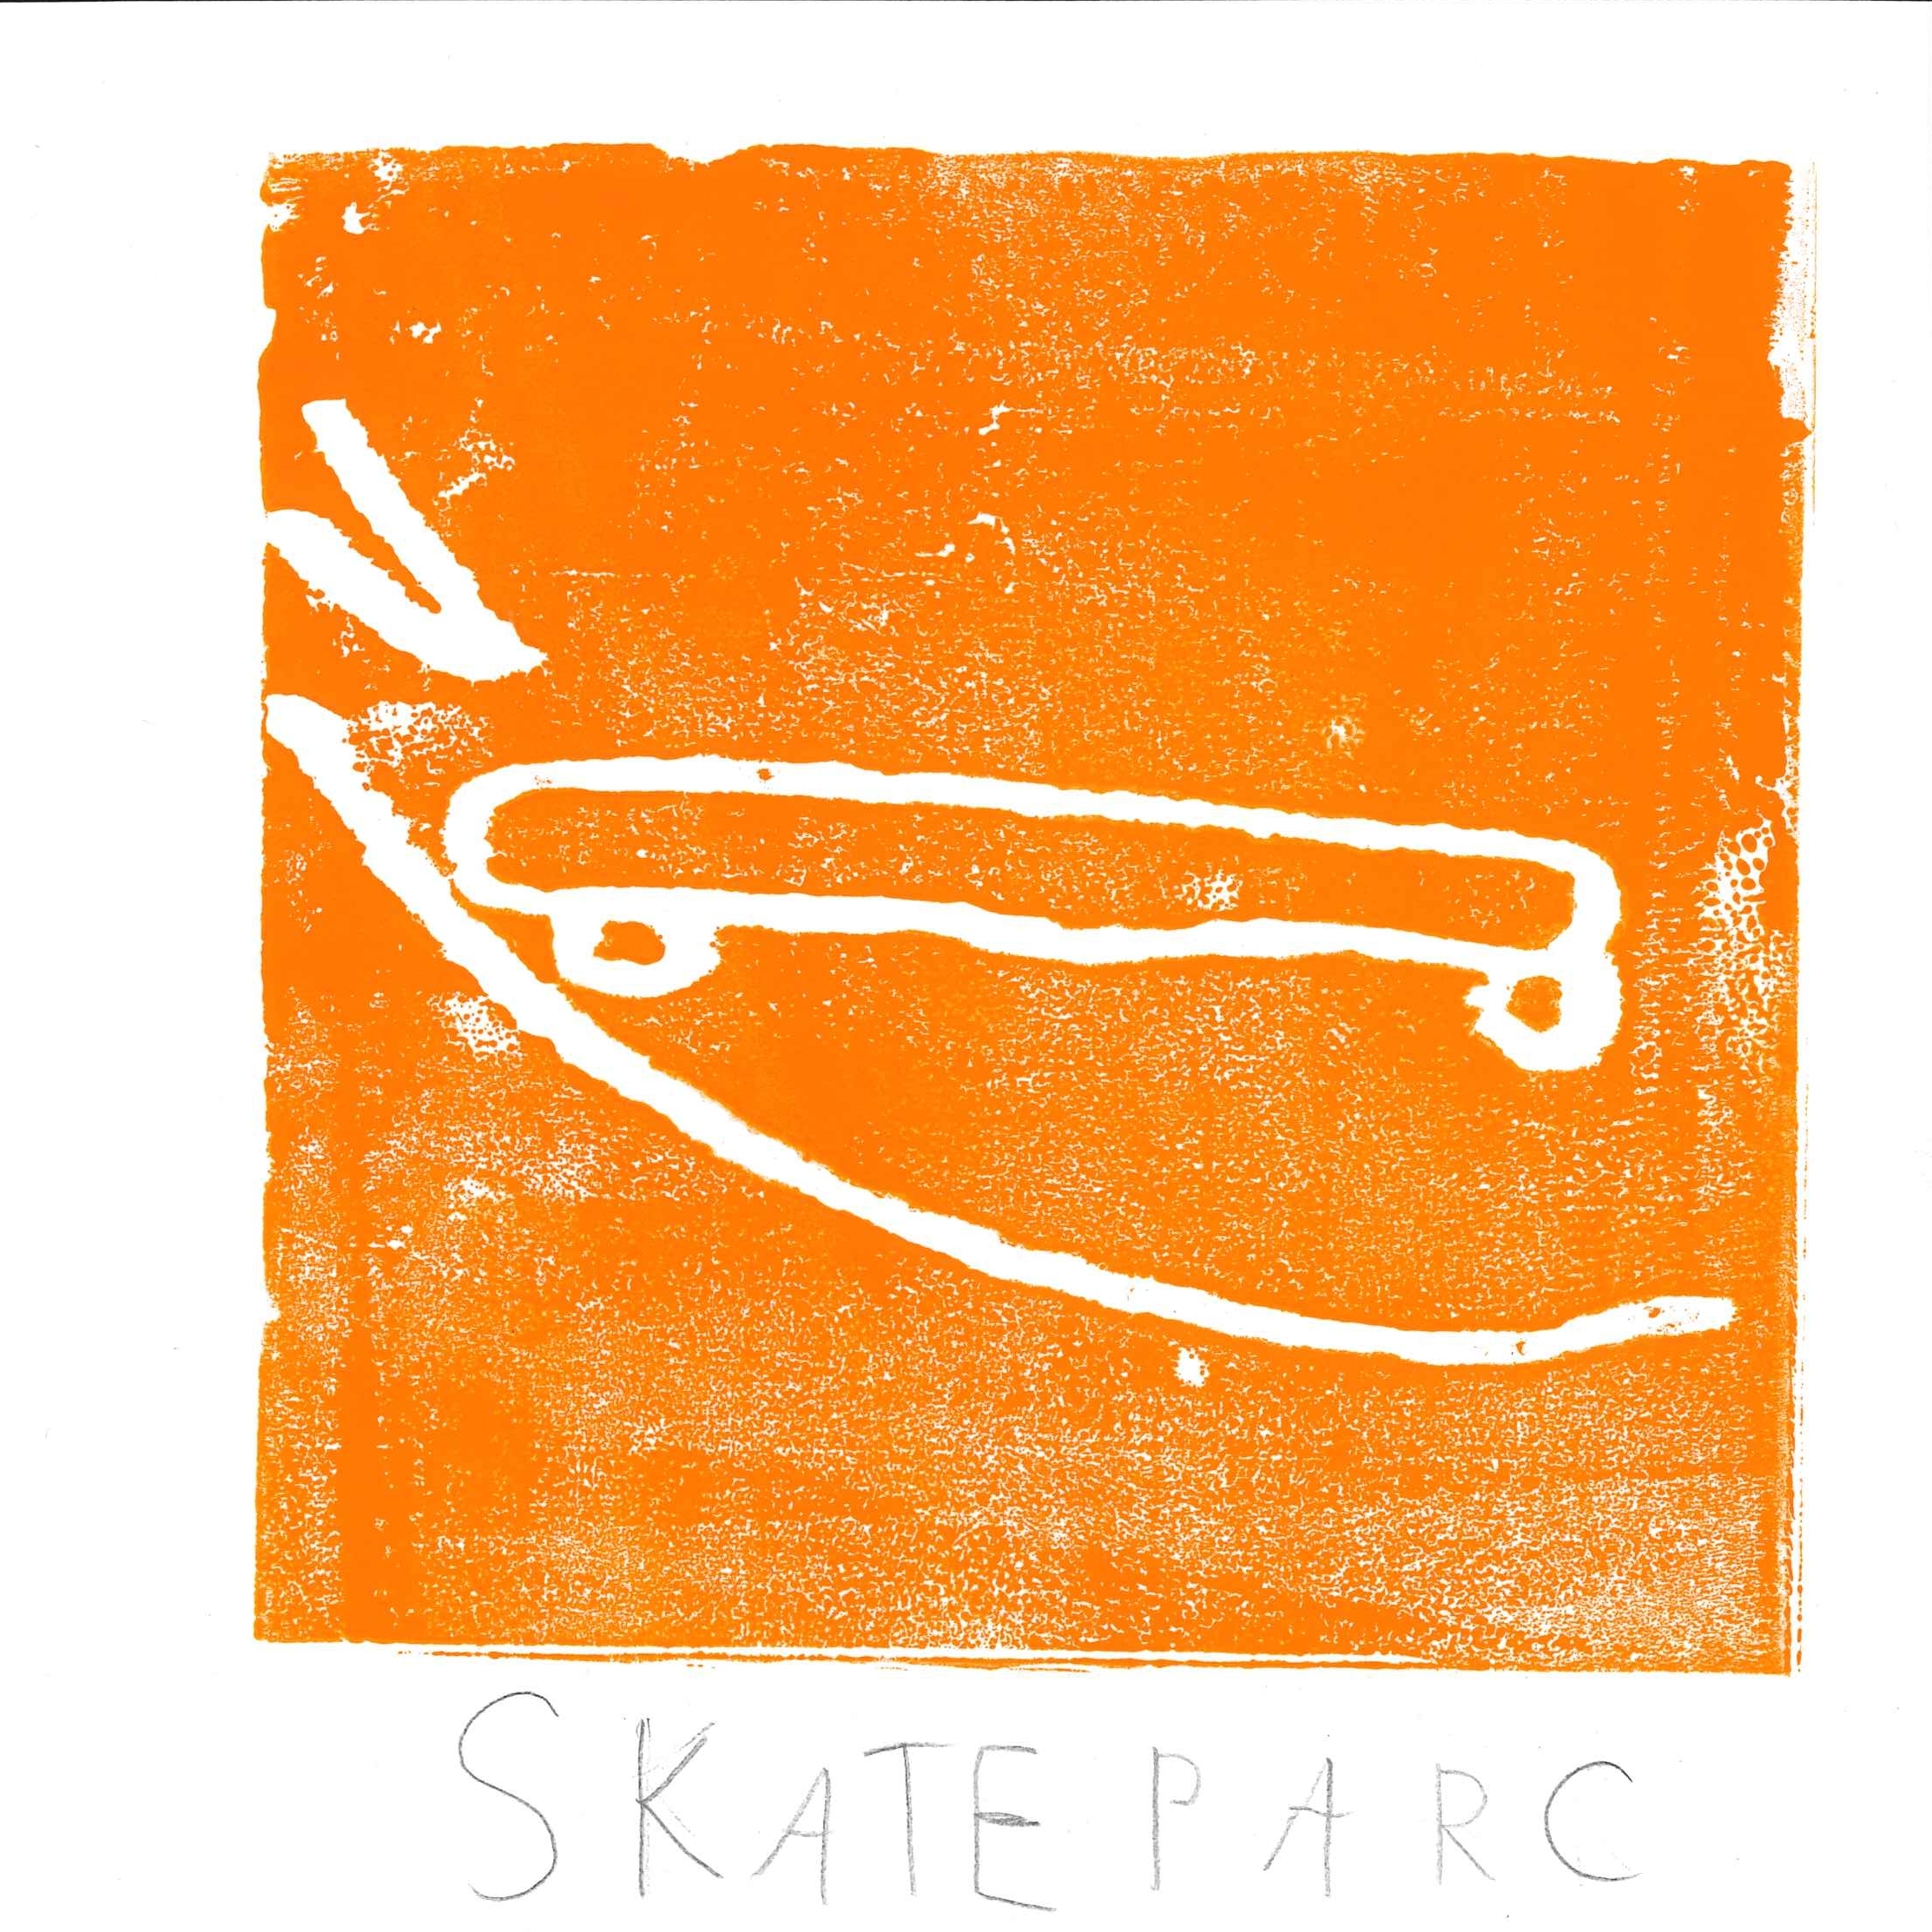 Dessin de Swan (8 ans). Mot: Skate, SkateparkTechnique: Gravure.